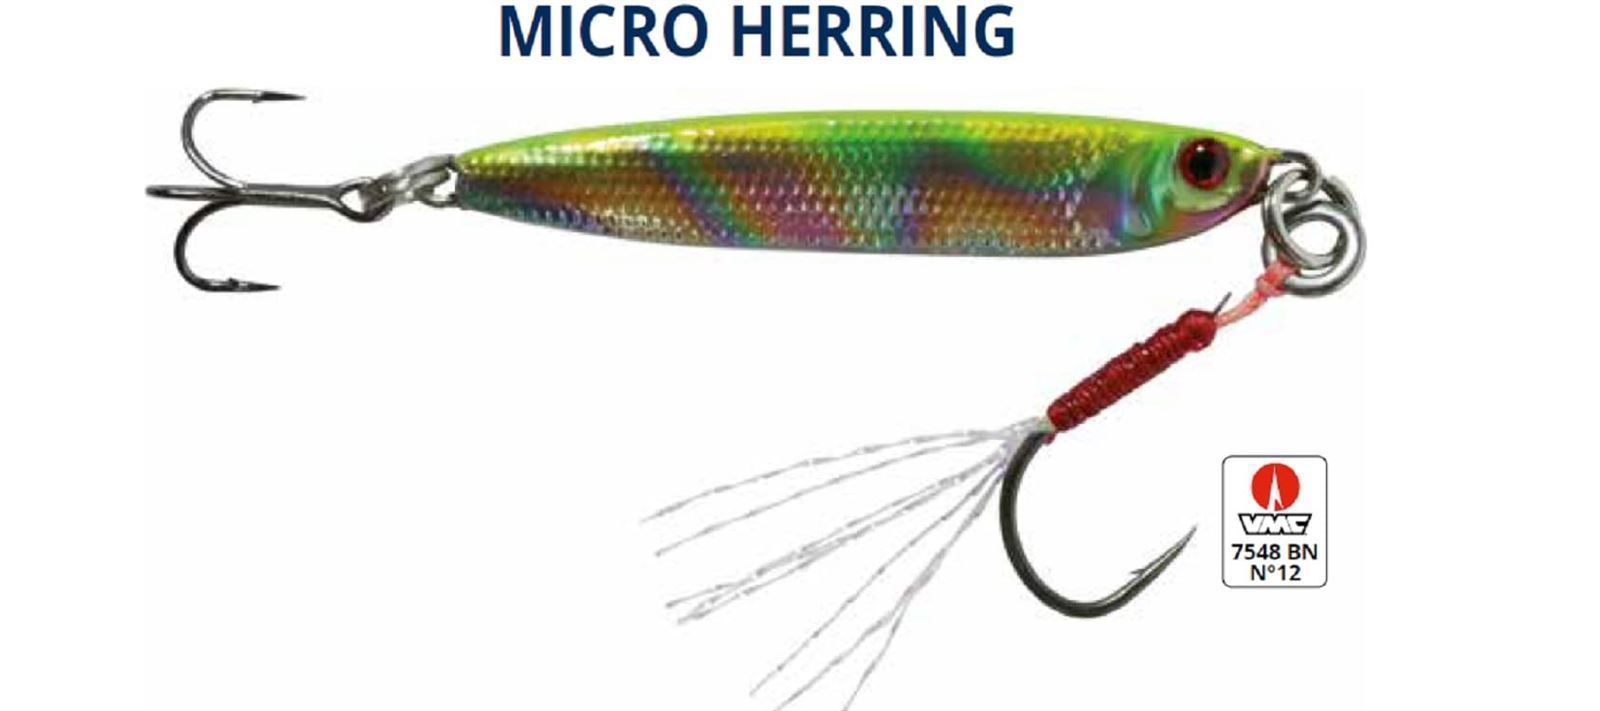 Señuelo RAGOT Micro Herring Jig desde orilla o barco - Imagen 1